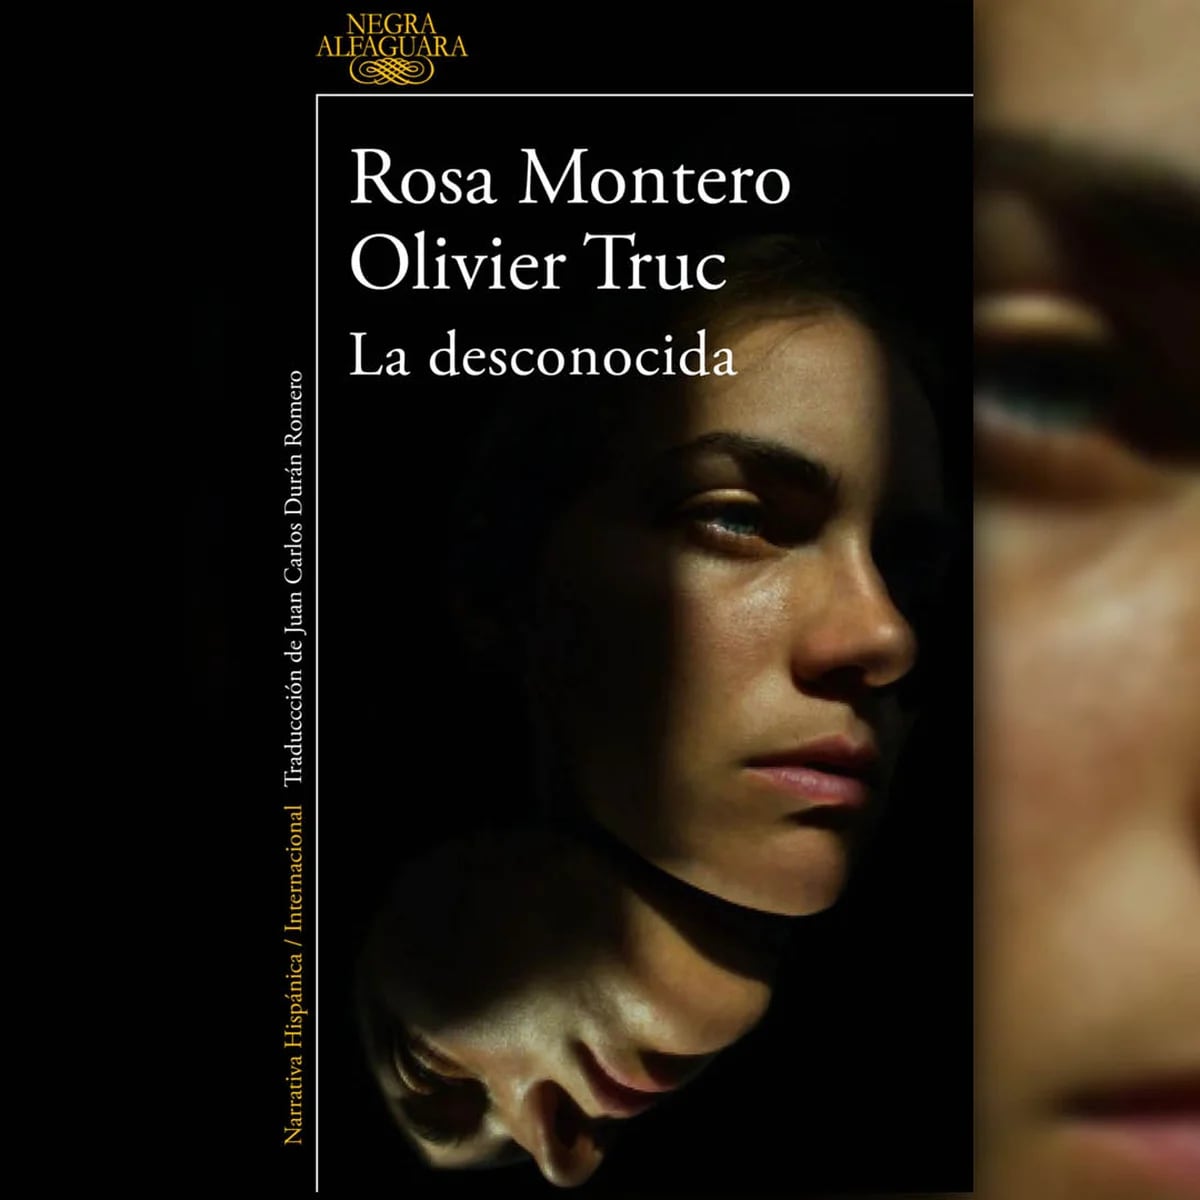 Fue como un frenesí, dice la escritora Rosa Montero sobre su nueva novela  La desconocida, escrita junto a Olivier Truc - CNN Video